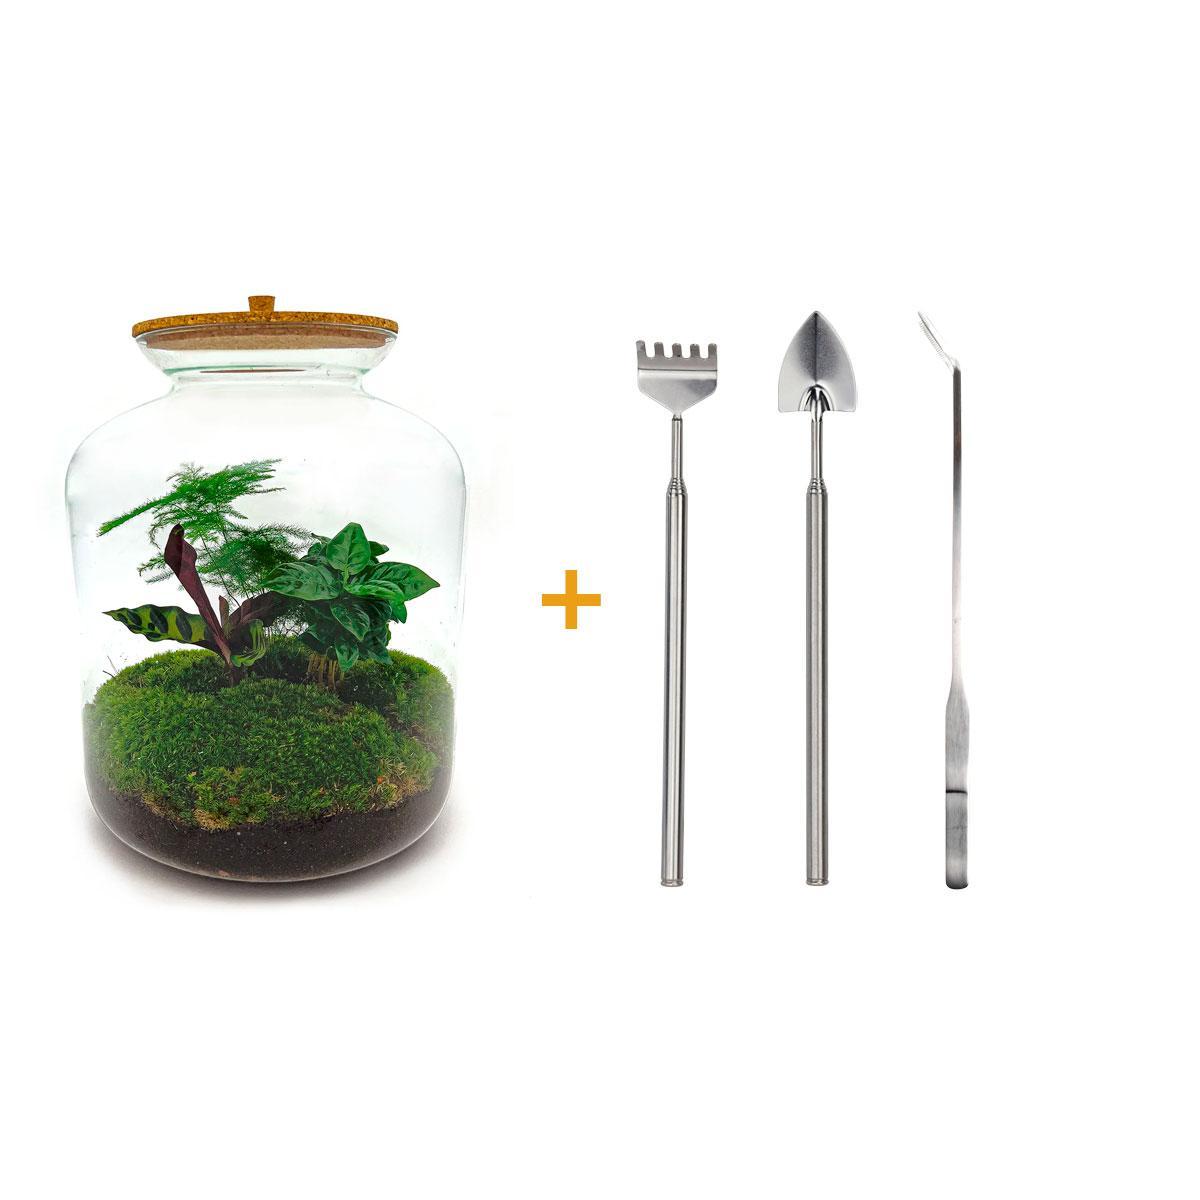 DIY terrarium - Lukas - ↕ 33 cm DIY terrarium - Lukas - ↕ 33 cm - Rake + Shovel + Tweezer